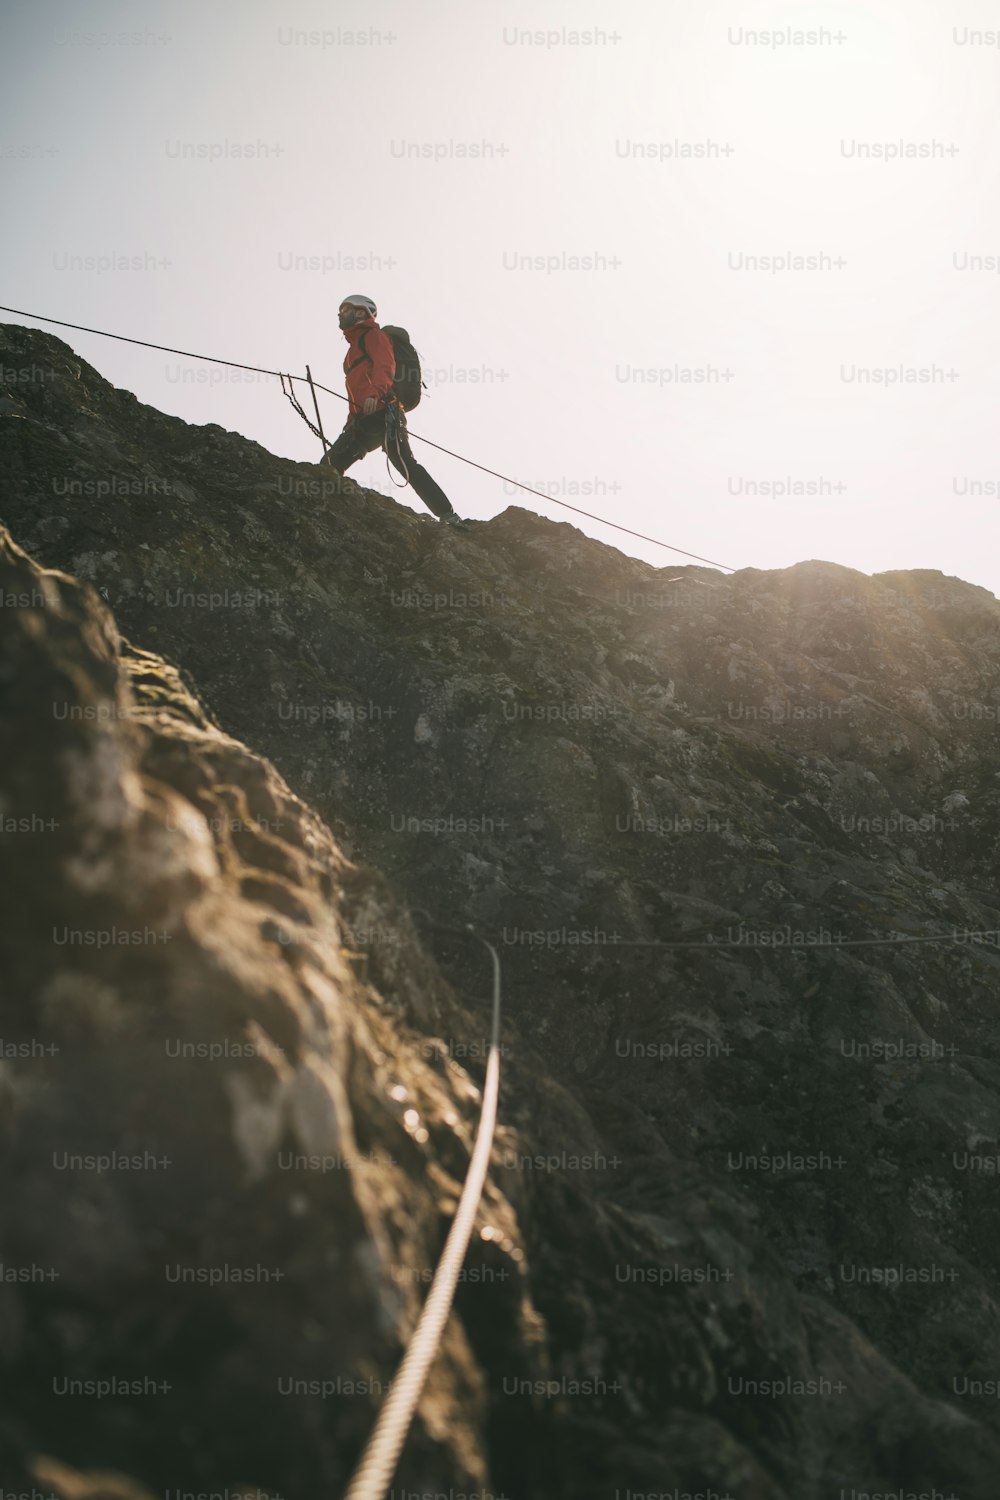 Alpinista com mochila usando corda de escalada para escalar o cume de montanhas rochosas.